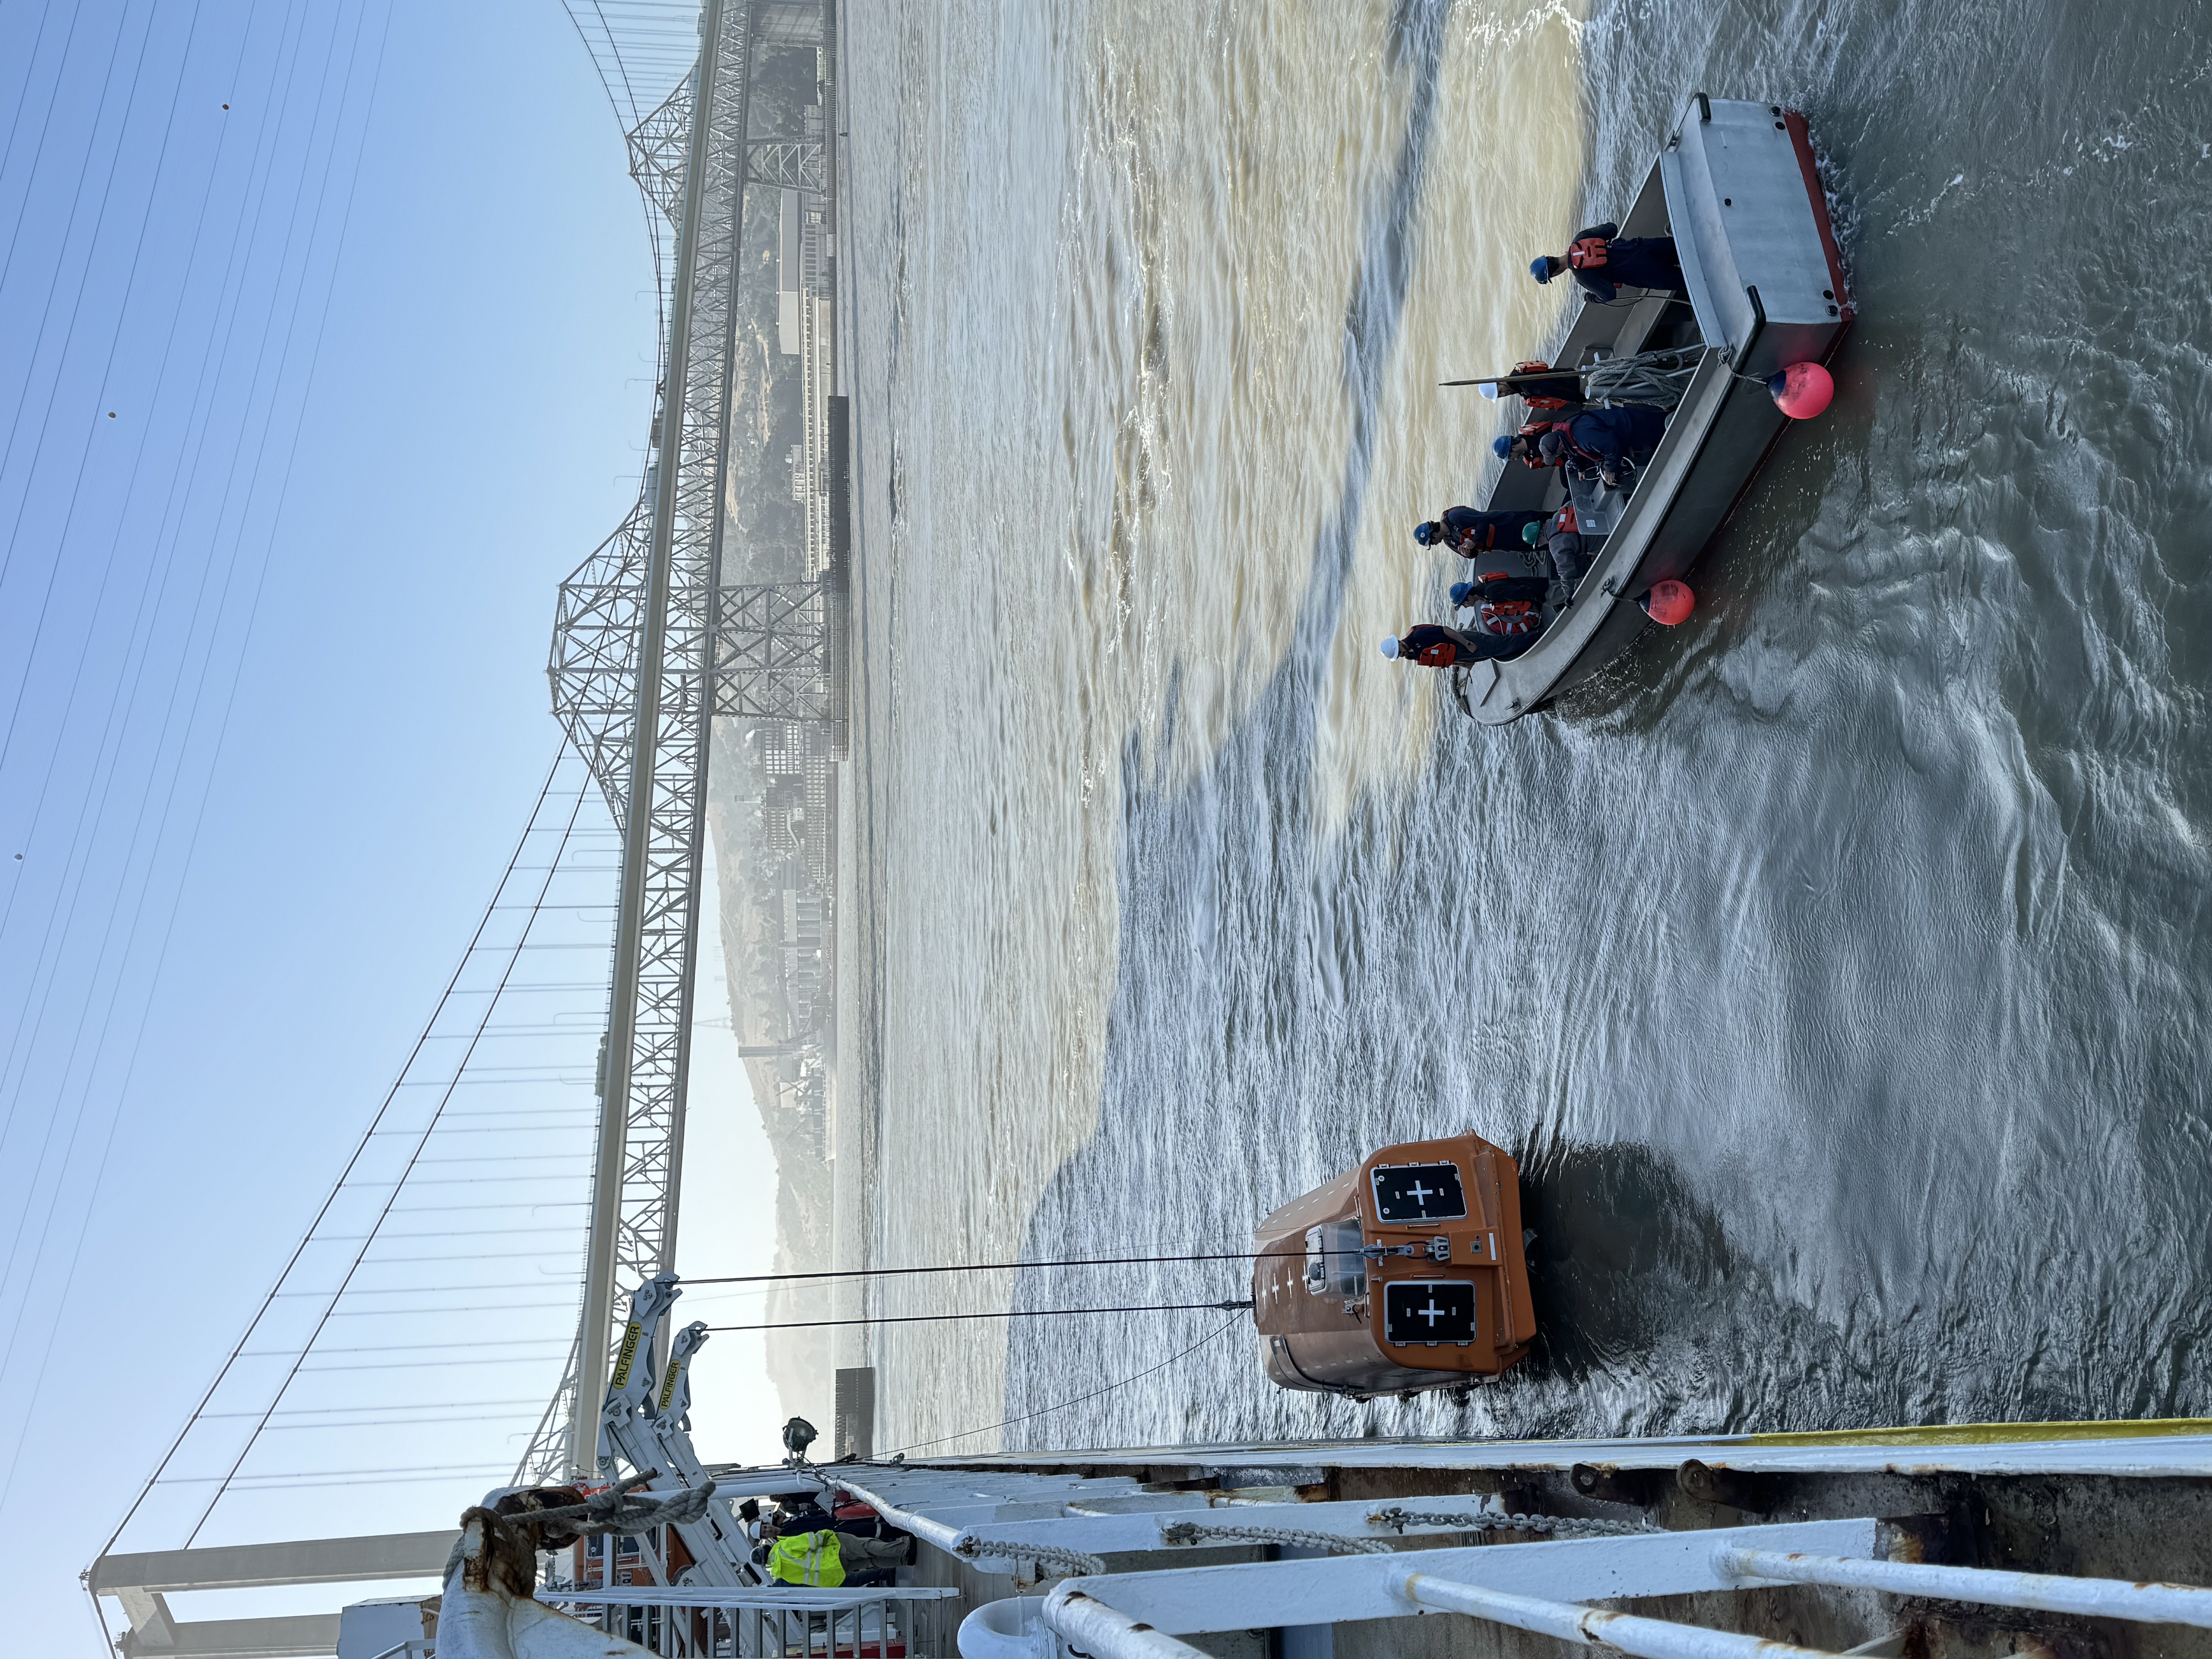 Lifeboat drills next to the Carquinez Bridge